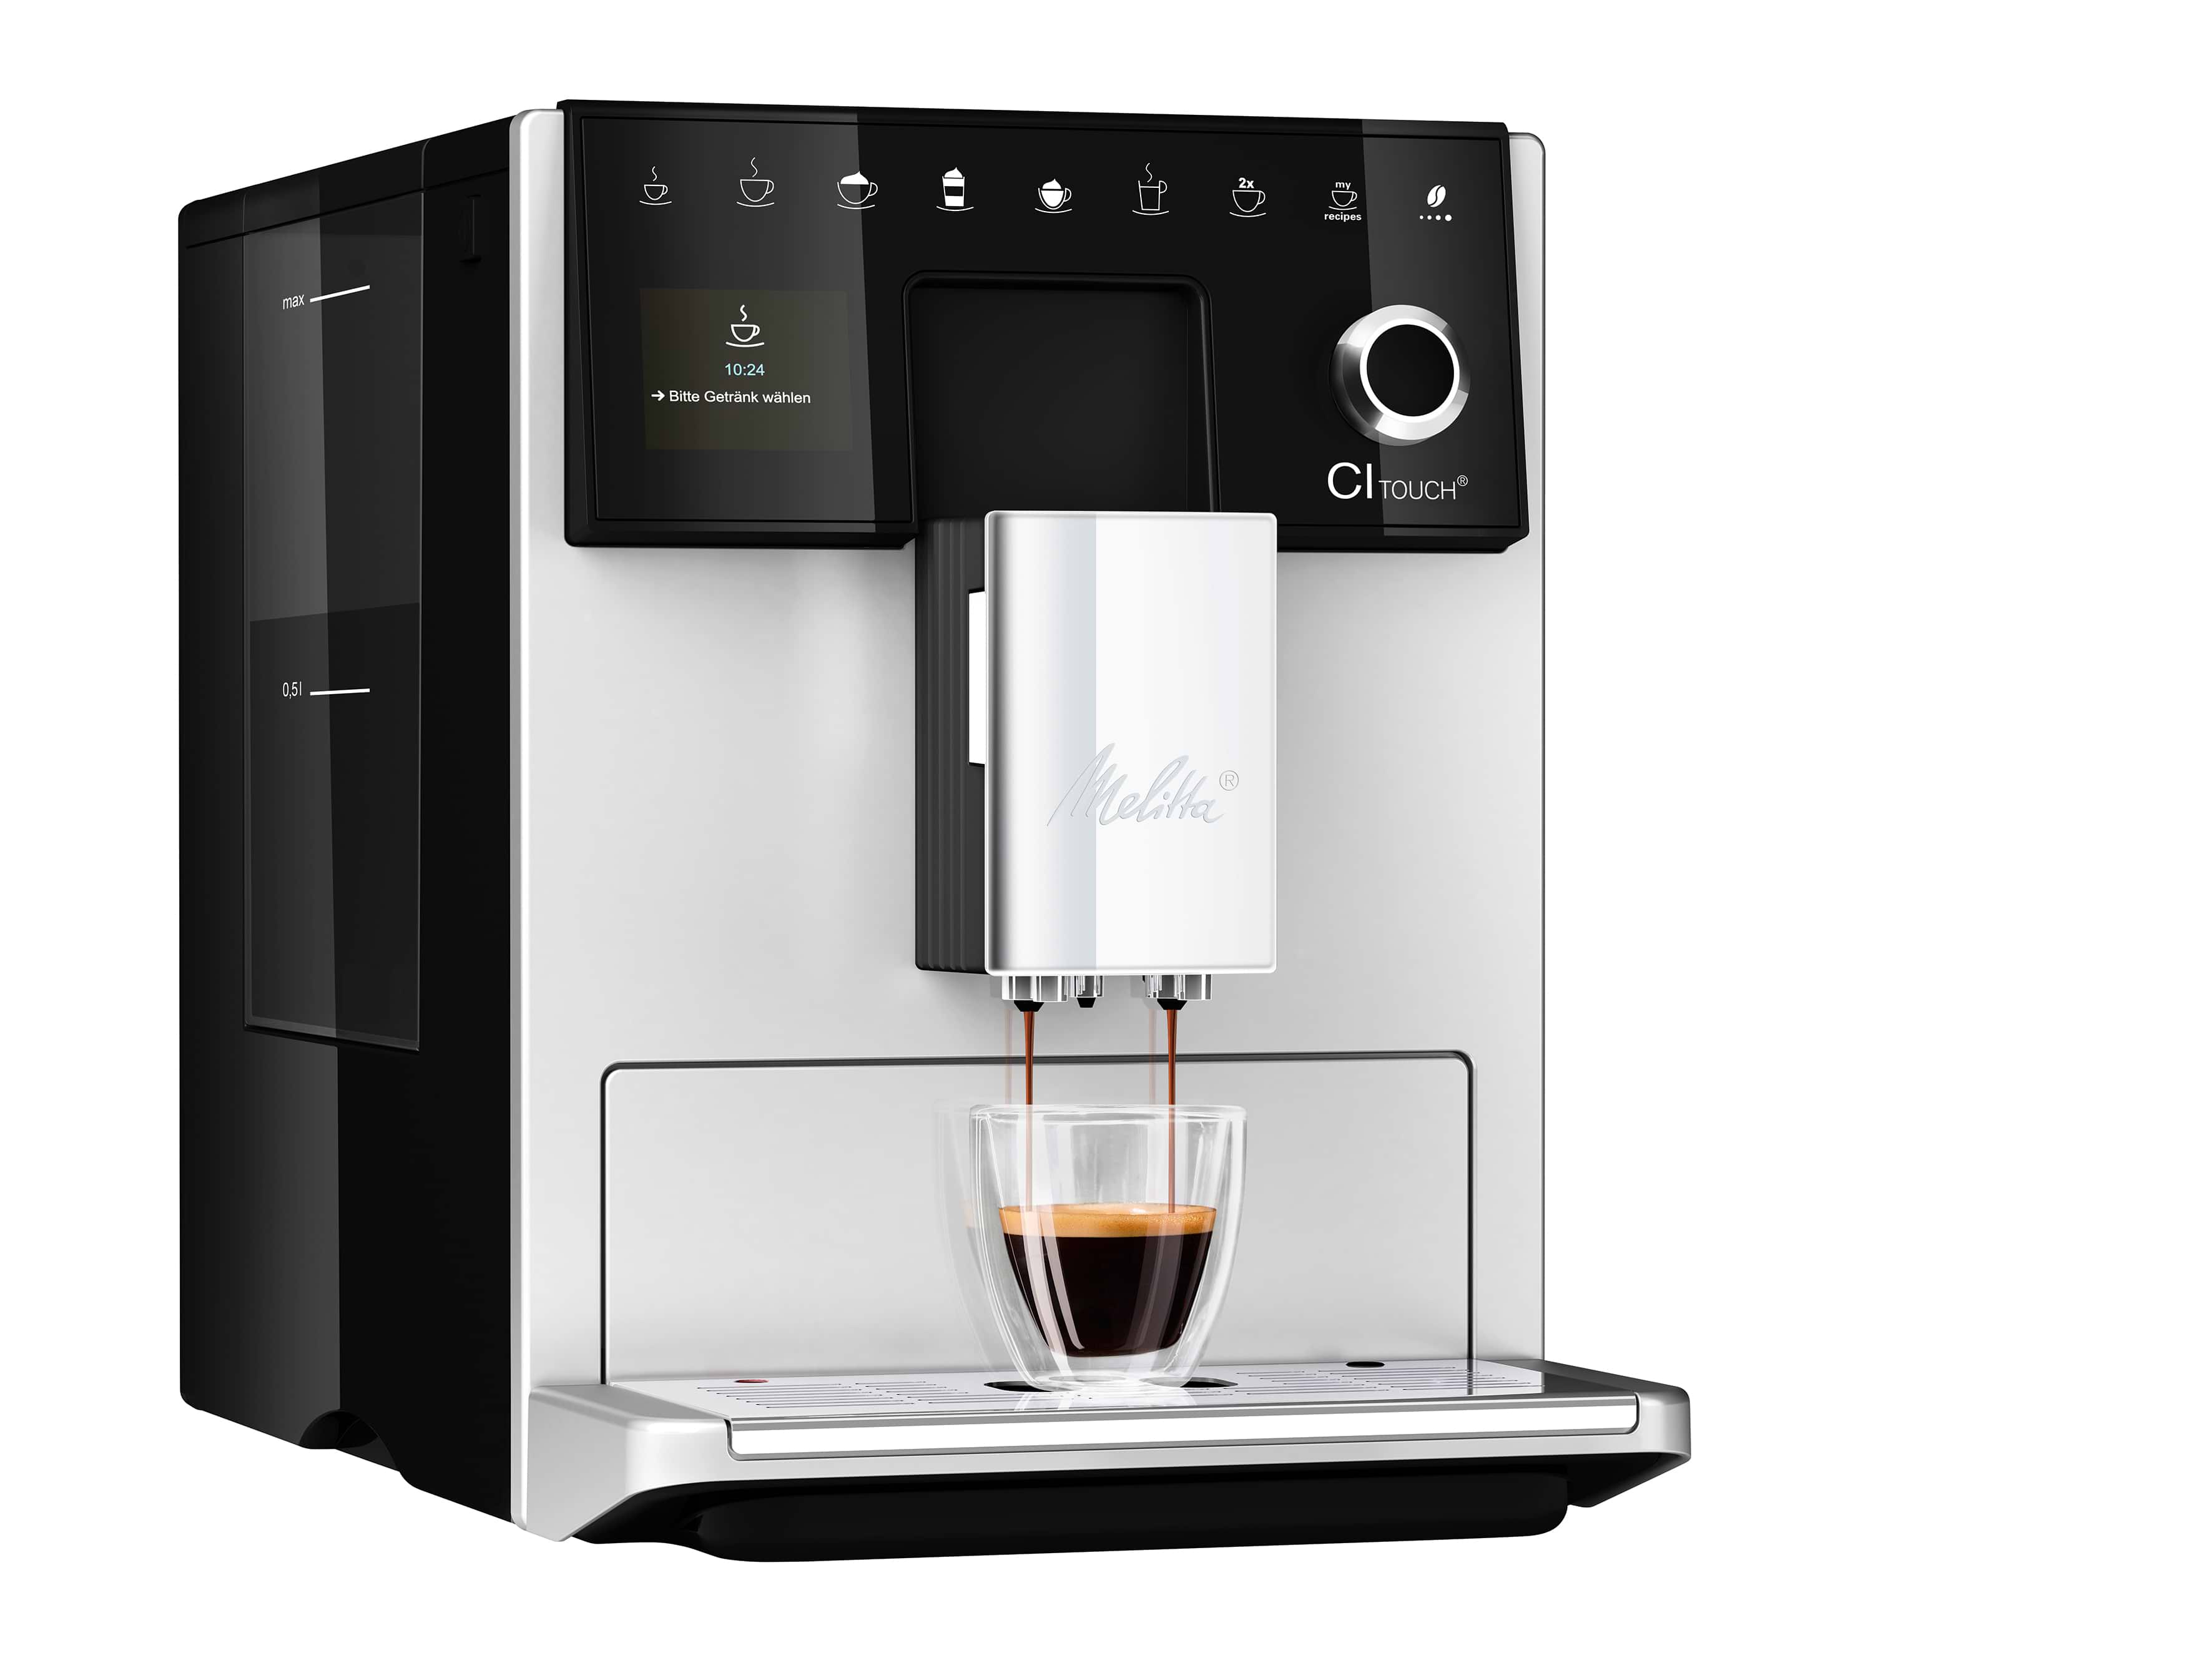 מכונת קפה אוטמטית מליטה סי אי טאץ' כסף Melitta CI Touch - אחריות יבואן רשמי